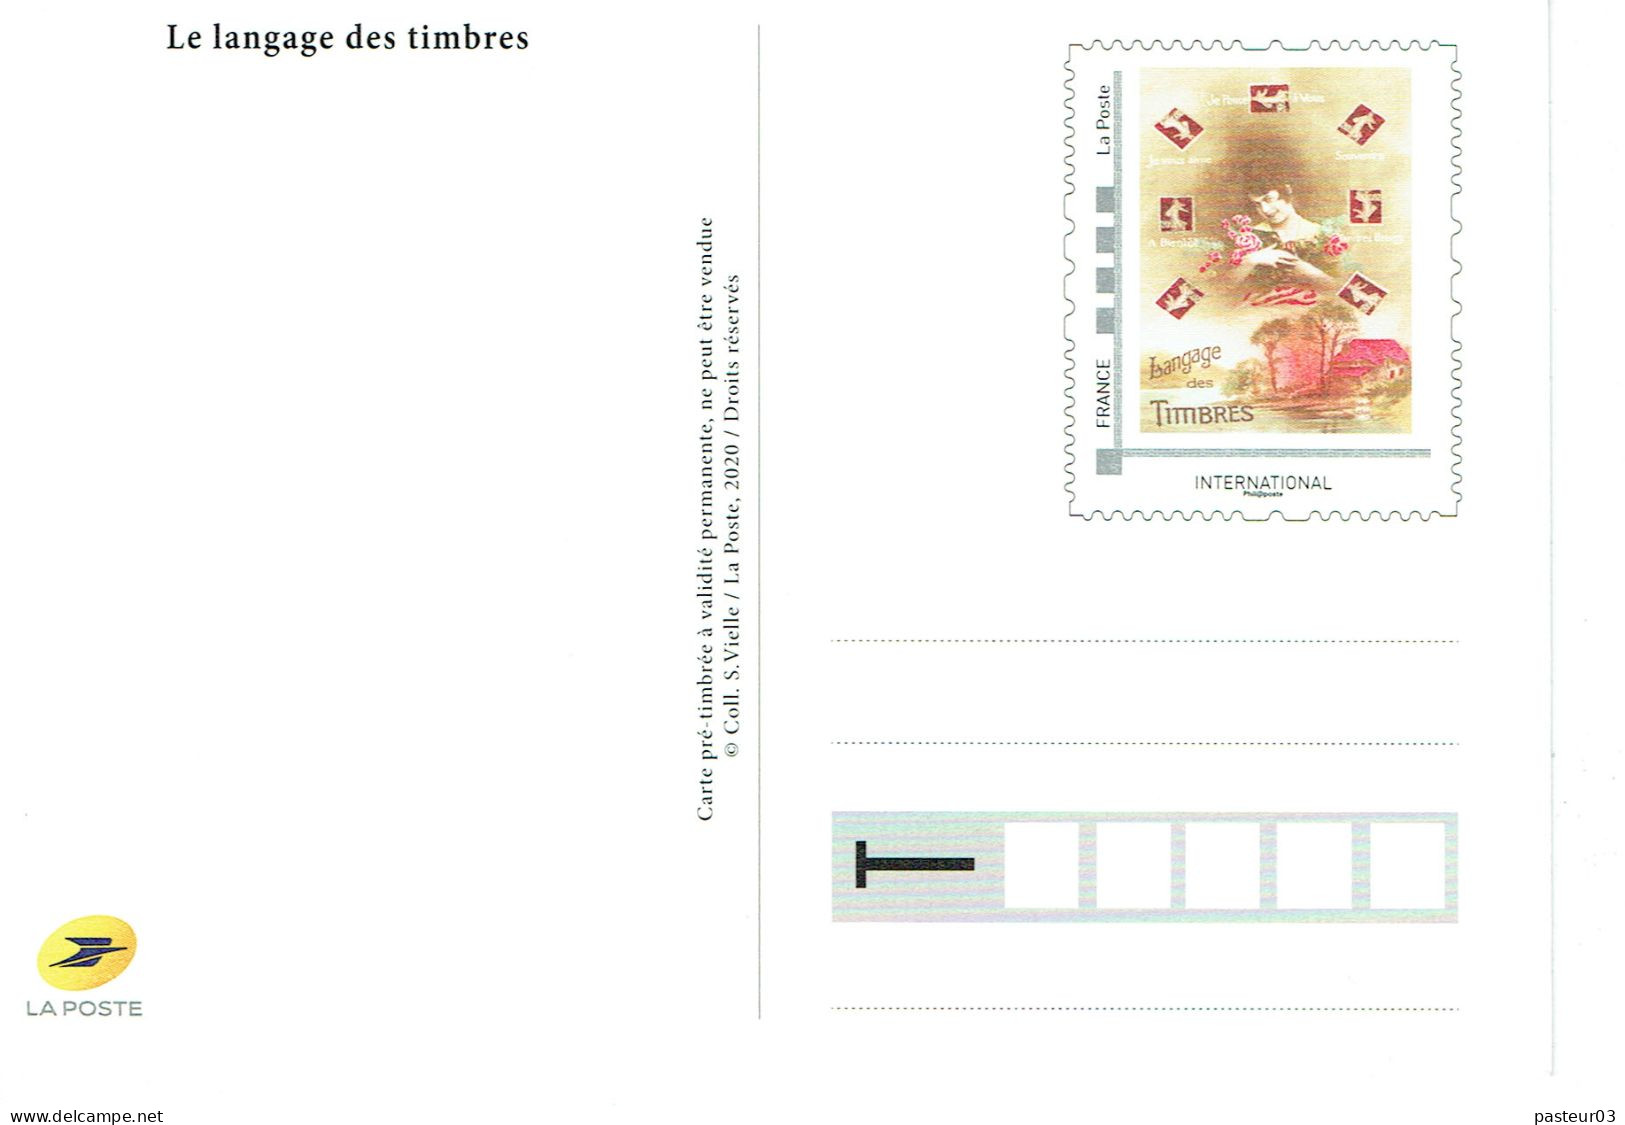 Série de 4 Entiers Le langage des timbres éditées par le Musée de La Poste voir liste Tarif international